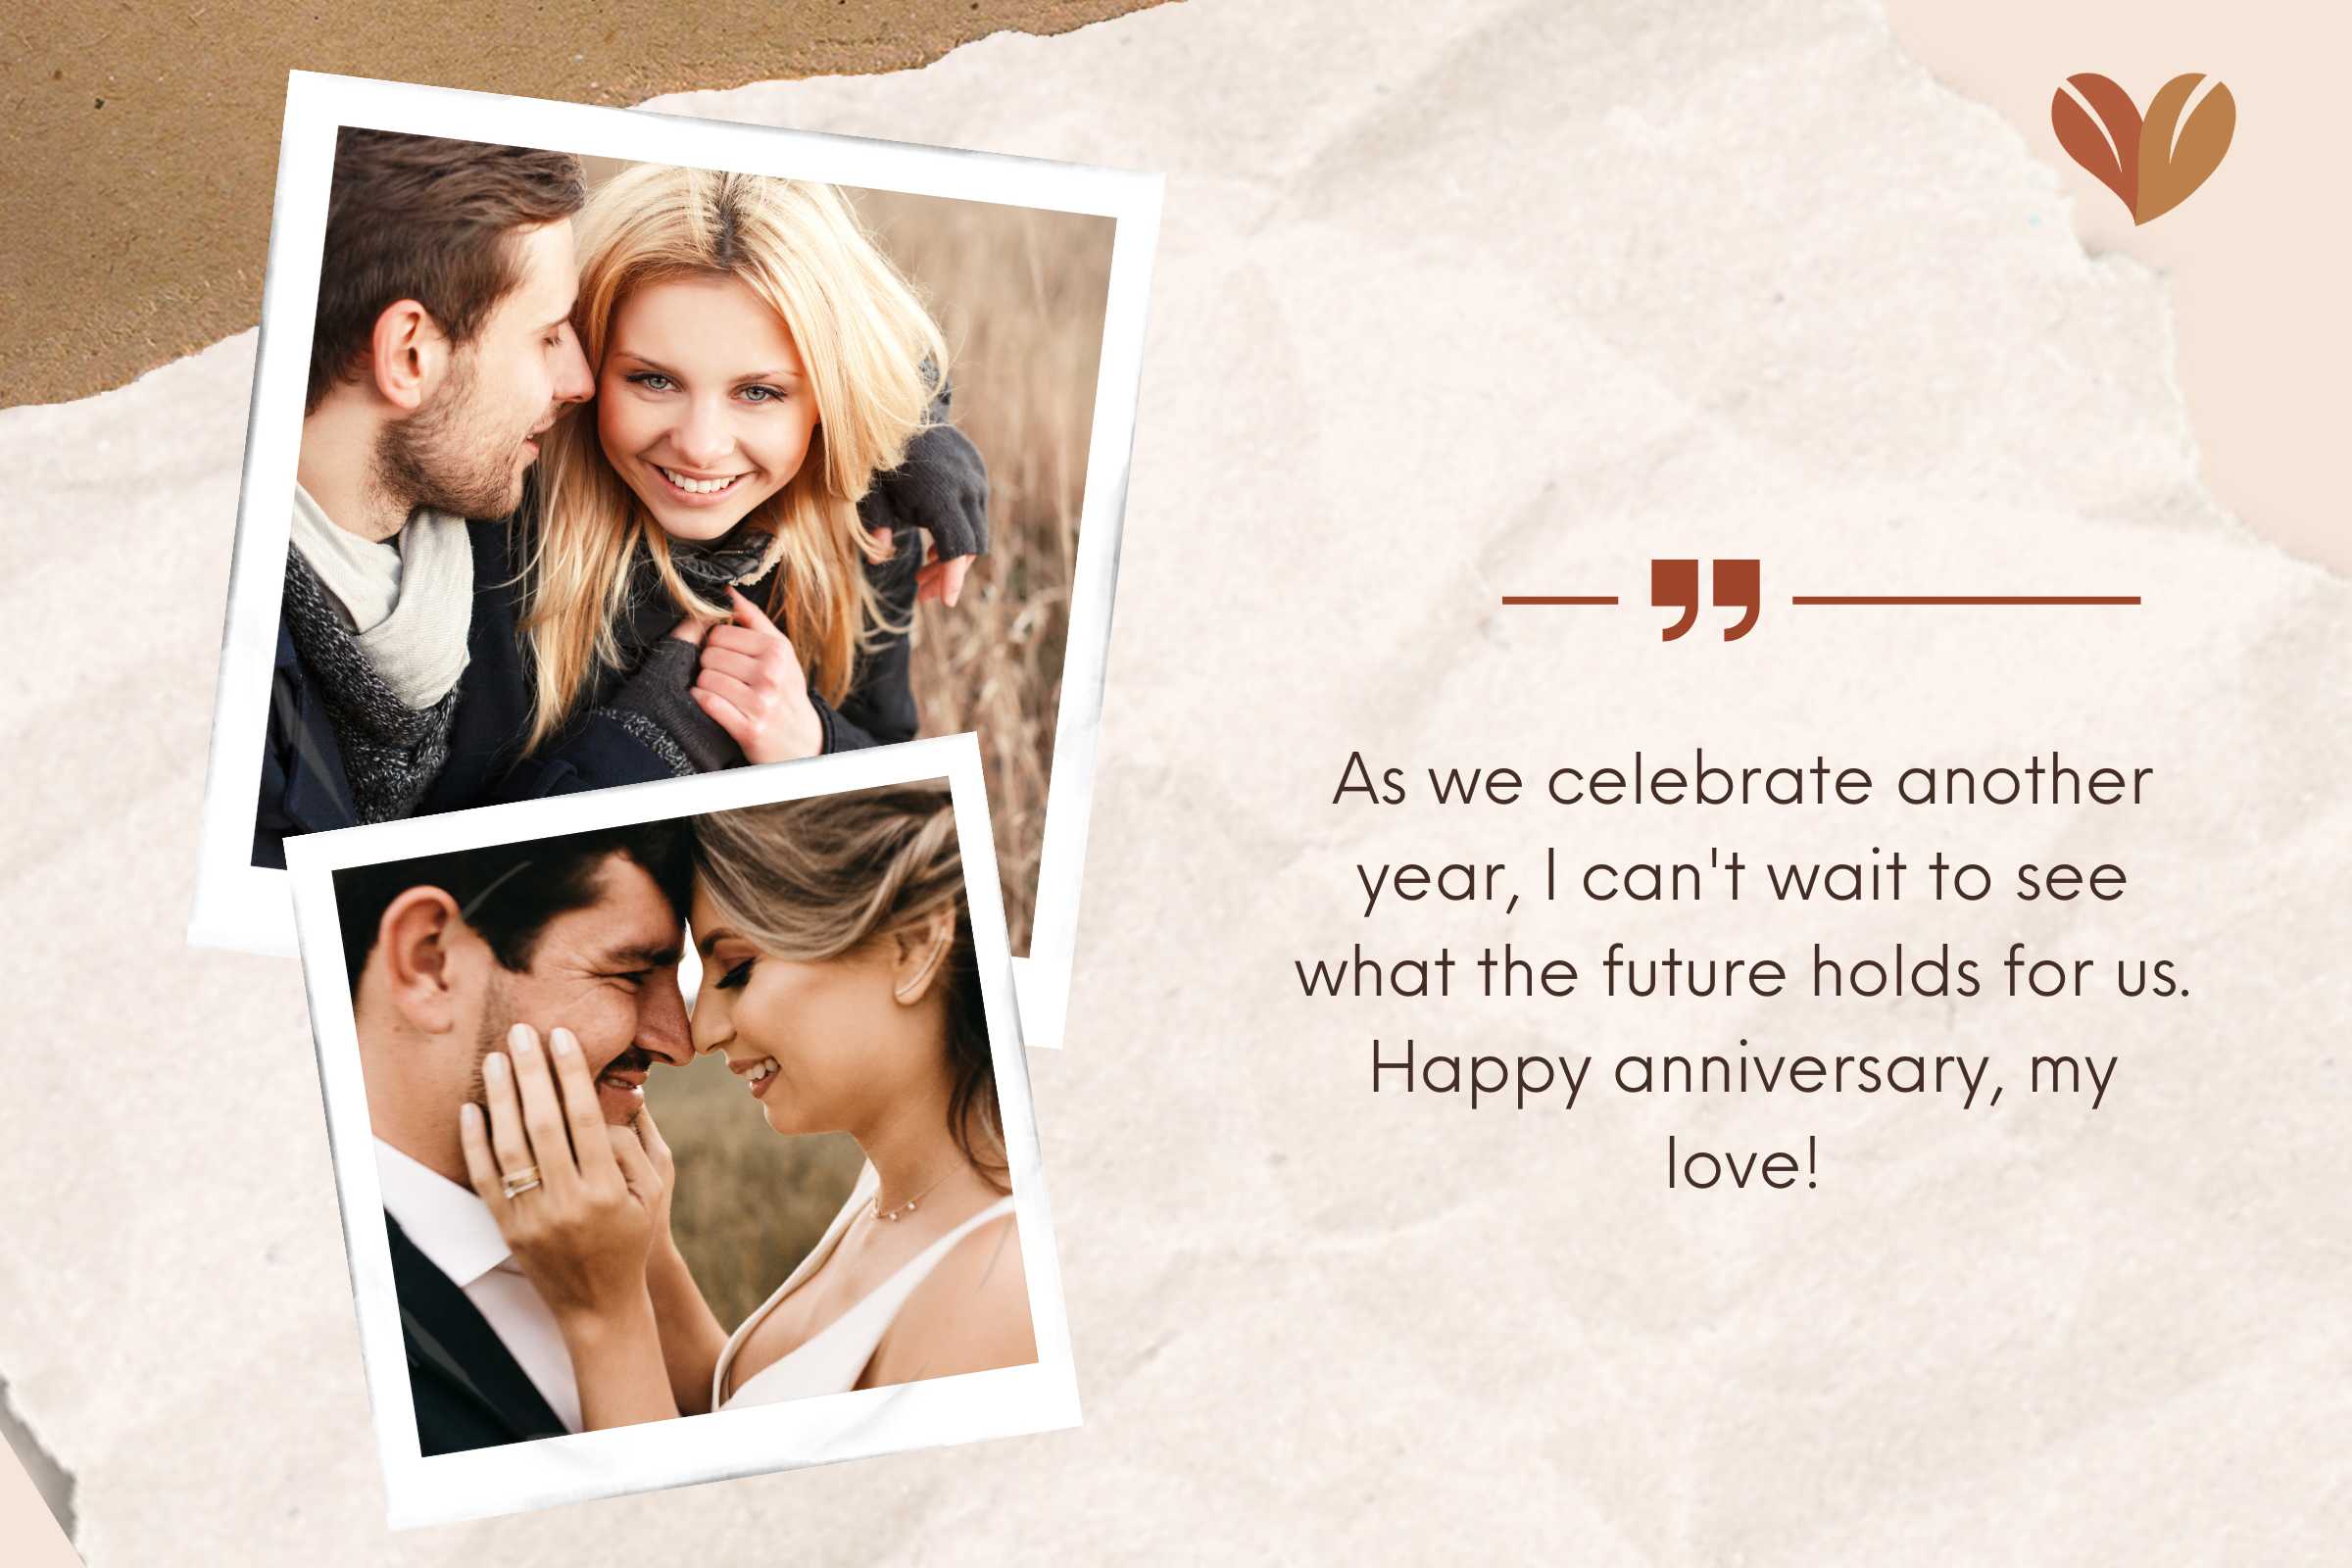 Sending love through heartfelt Anniversary card messages